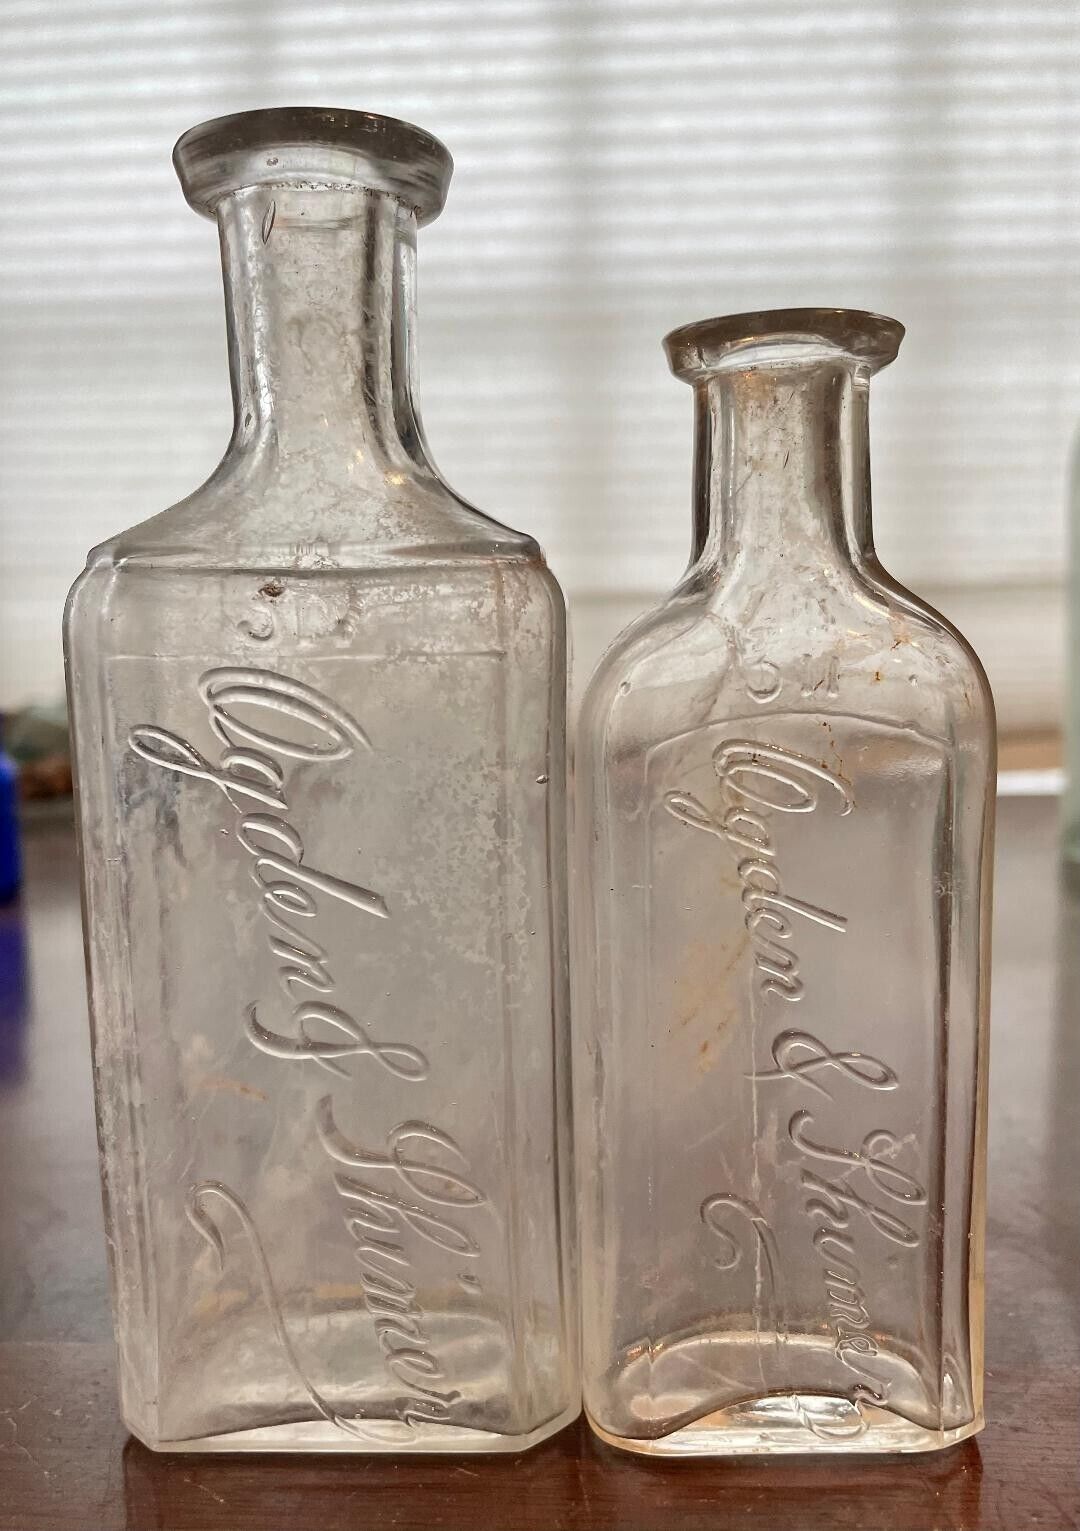 2 - 1800s OGDEN & SHIMER Druggist Bottles, MIDDLETOWN NY, ORANGE COUNTY, Blown